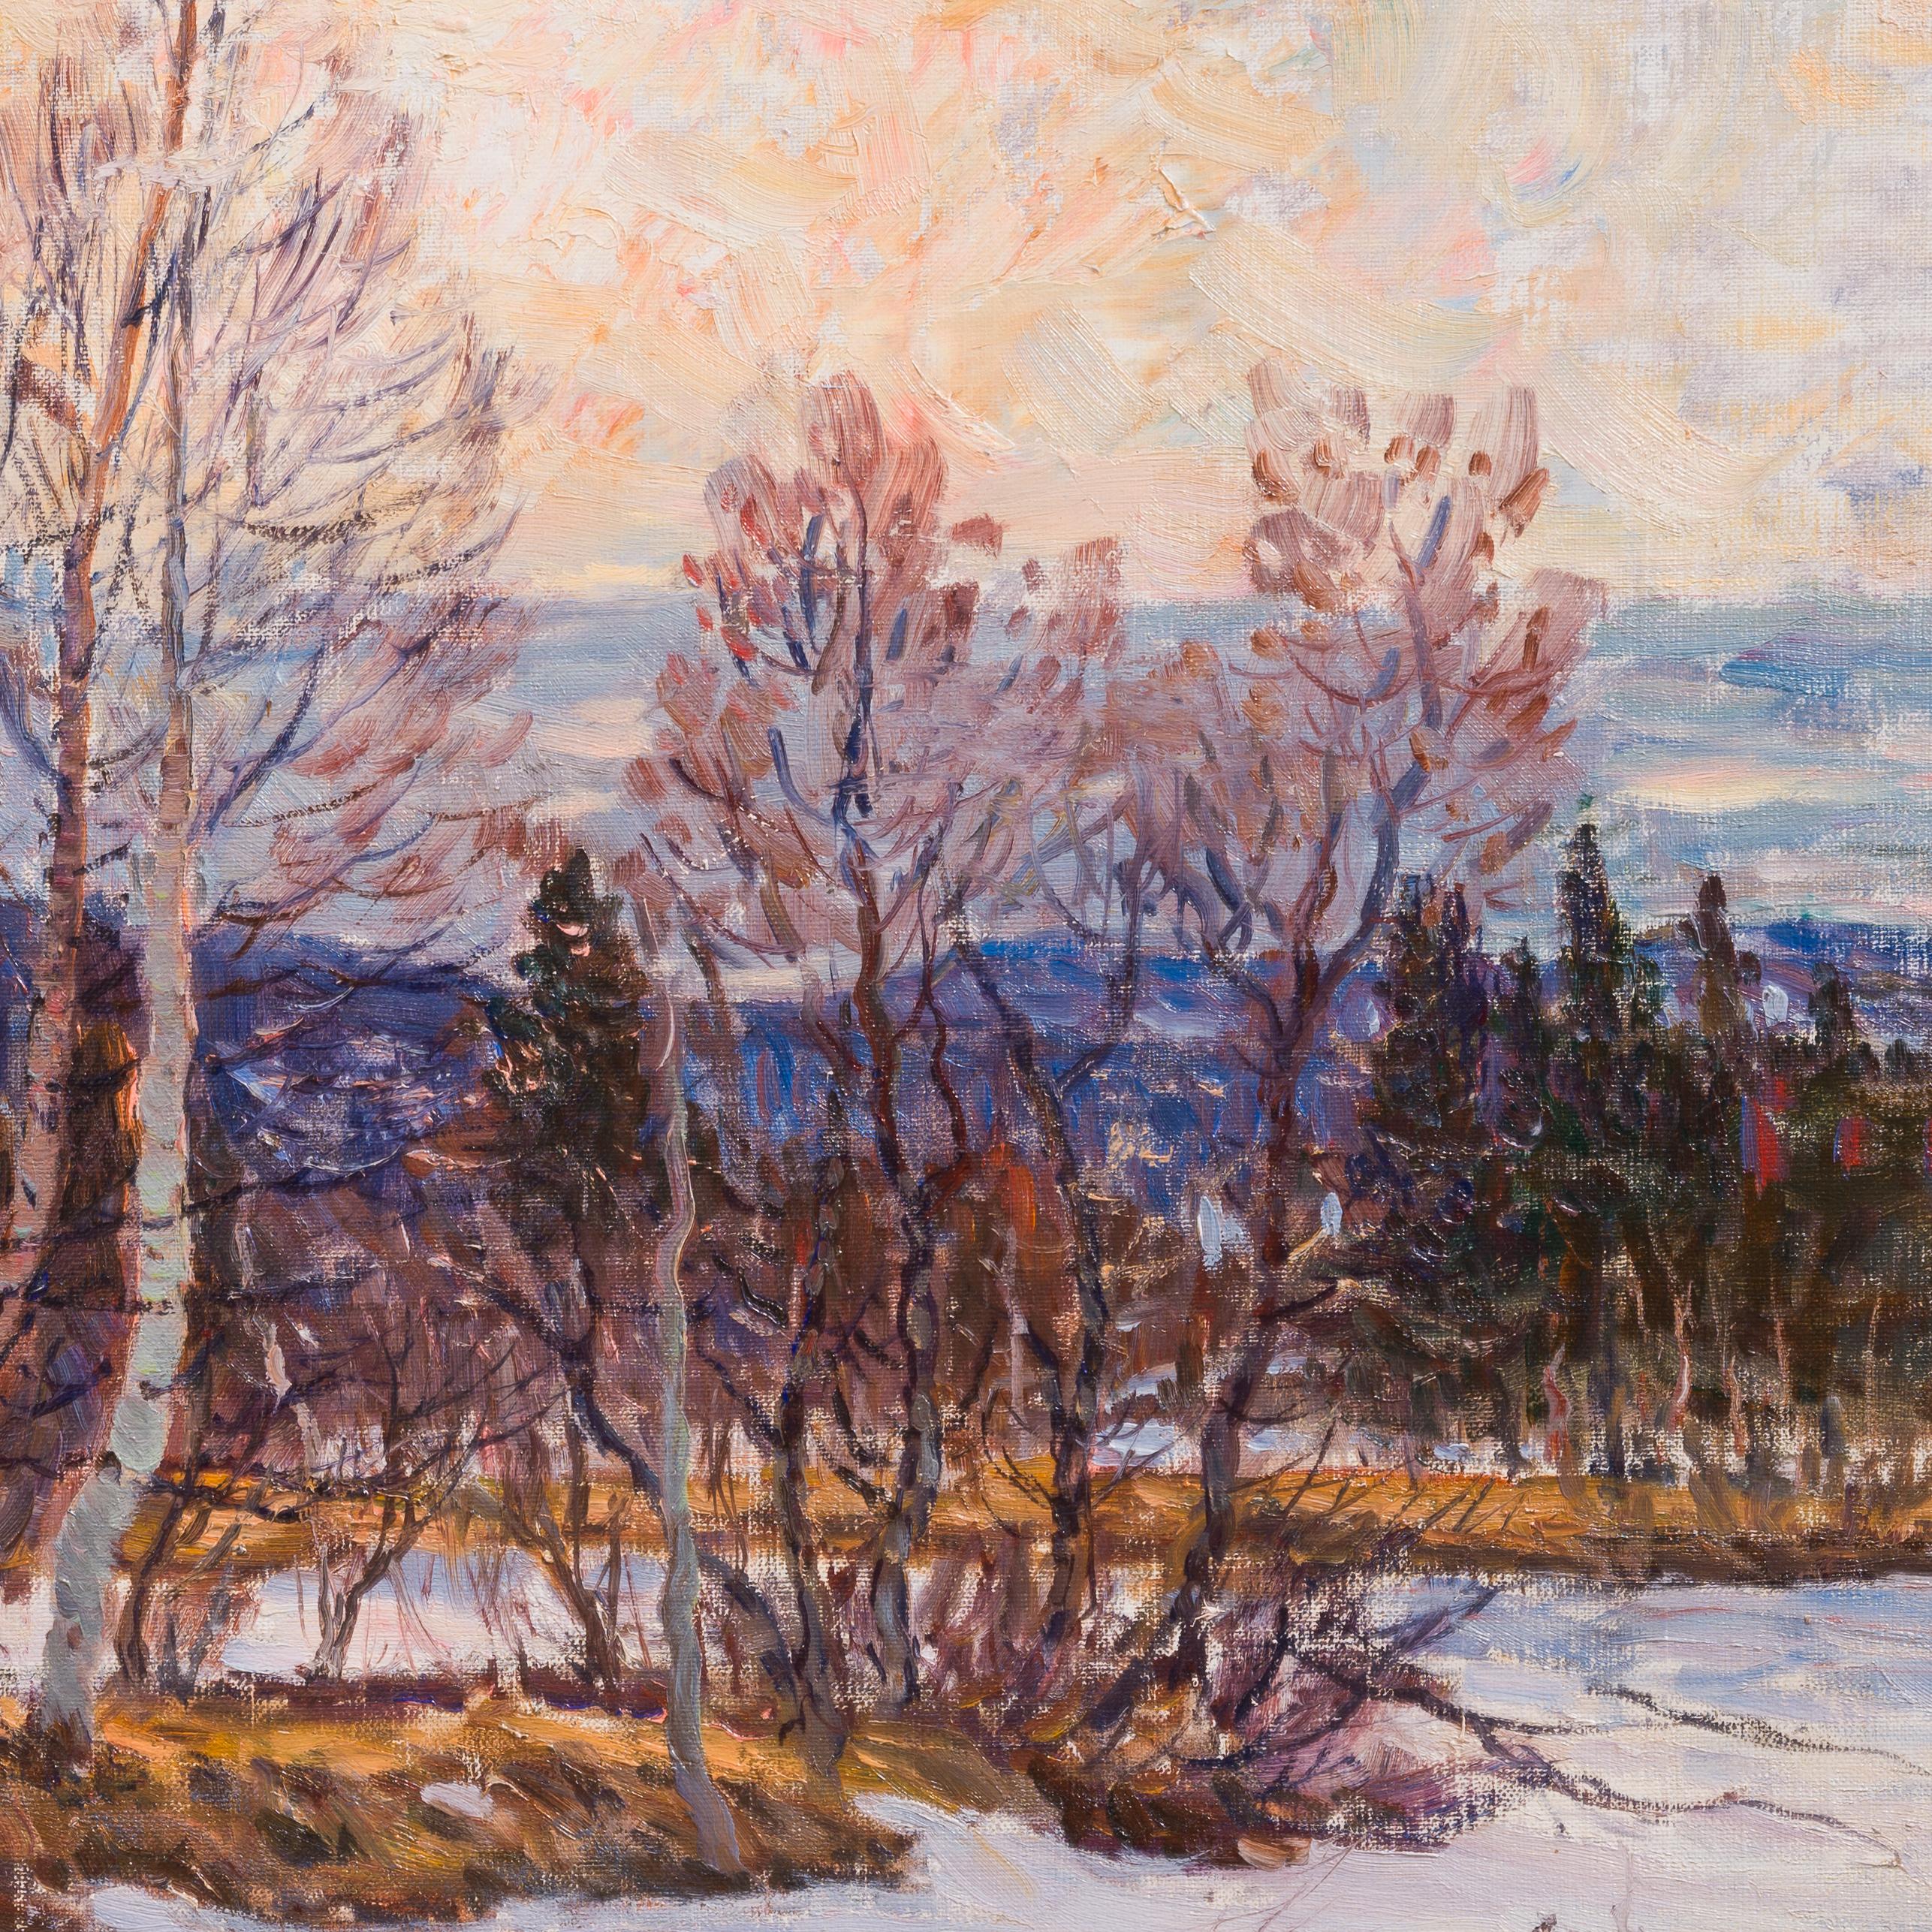 Der Winterteich ist ein fesselndes Gemälde von Anton Genberg, einem schwedischen Künstler, der für seine naturalistischen Landschaften bekannt ist. Dieses besondere Werk aus dem Jahr 1927 lädt den Betrachter in eine ruhige Winterszene ein, die durch